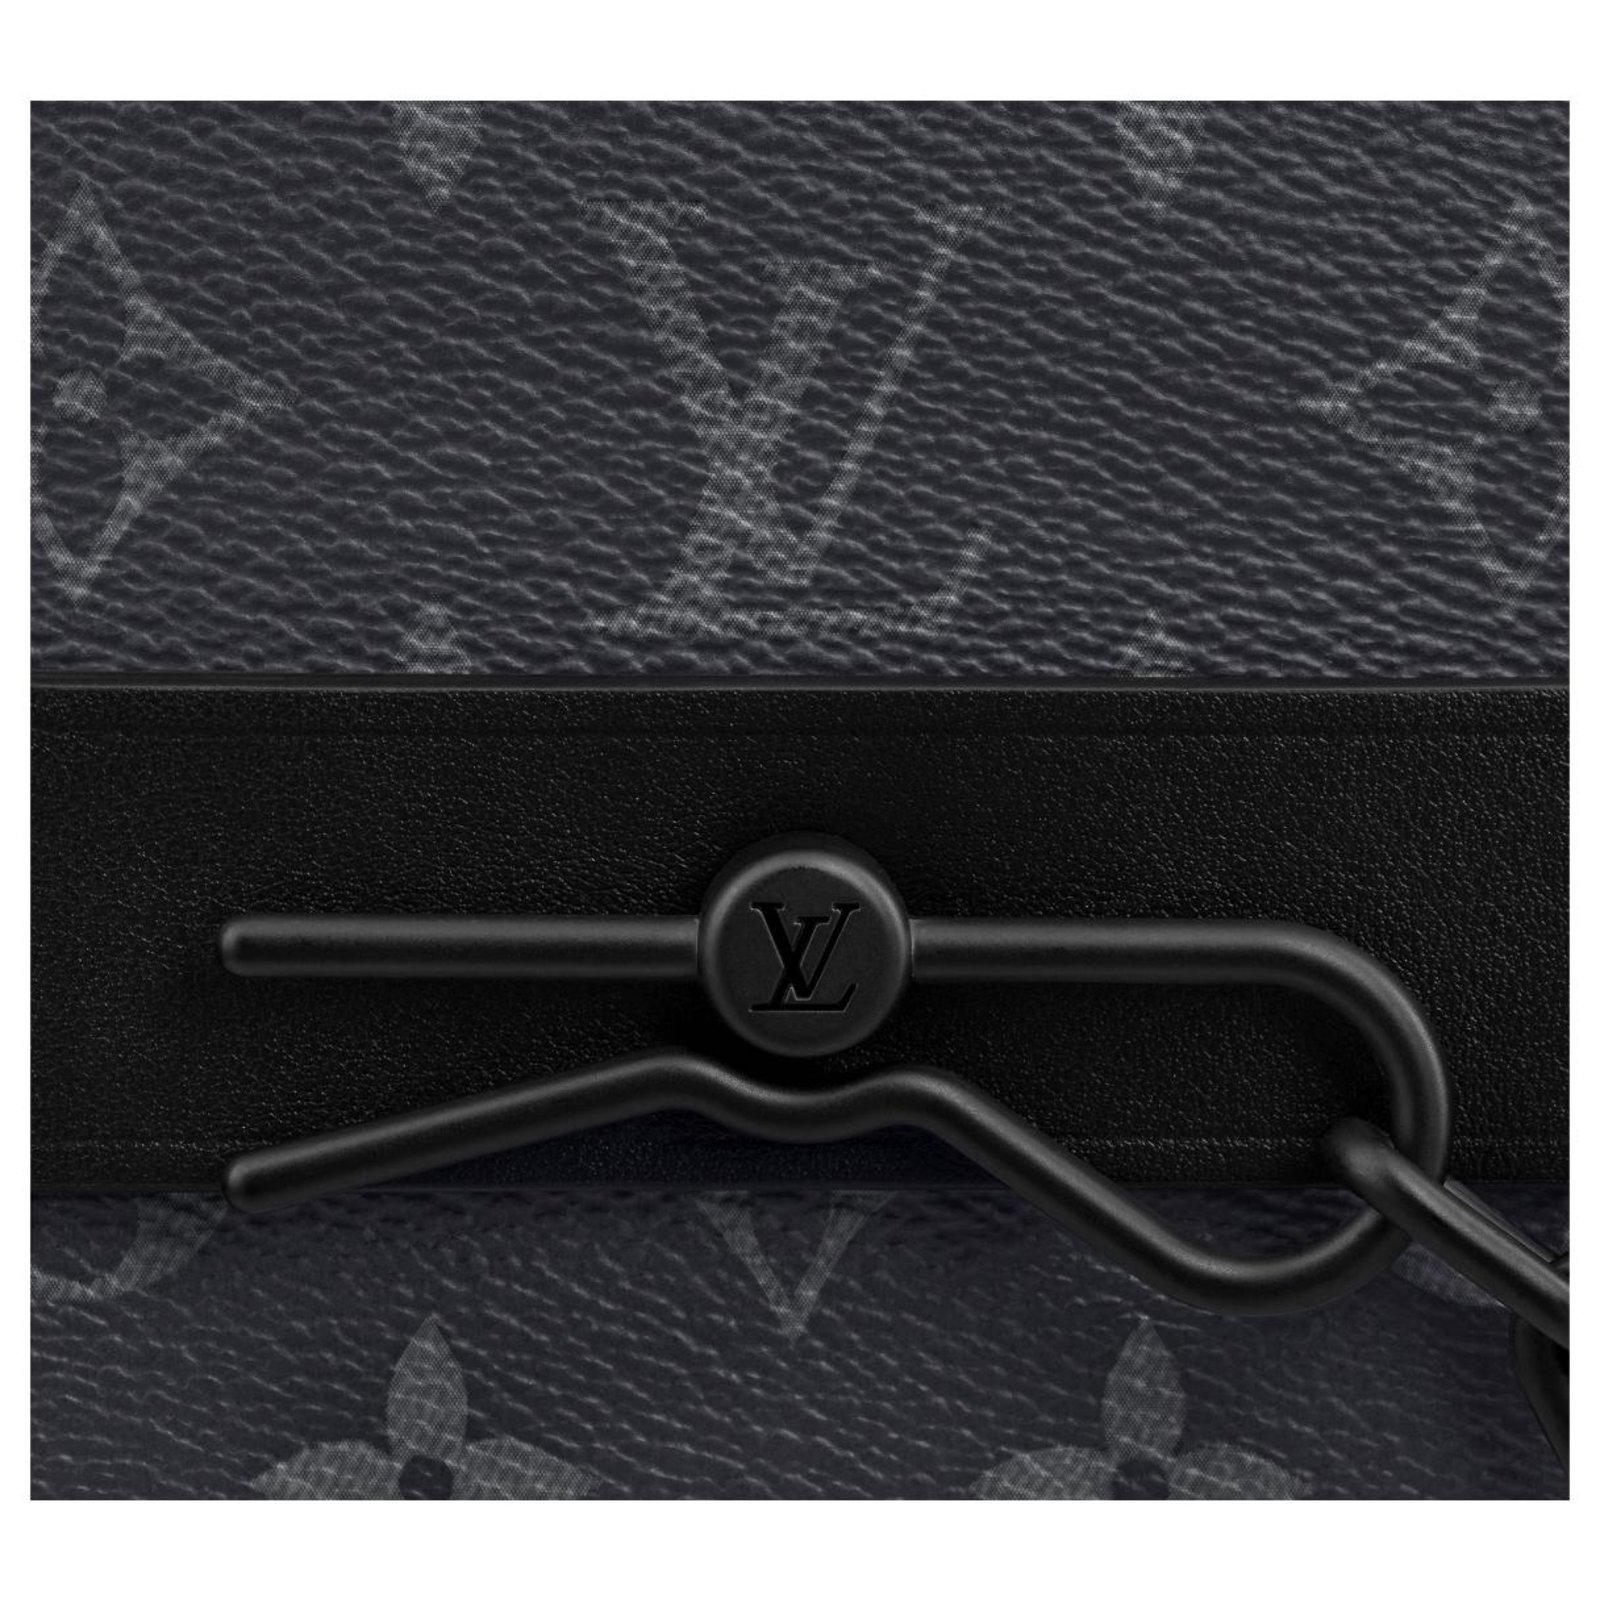 Sac Steamer Messenger Luxe En Cuir - Marron/Noir - Homme - Louis Vuitton ®